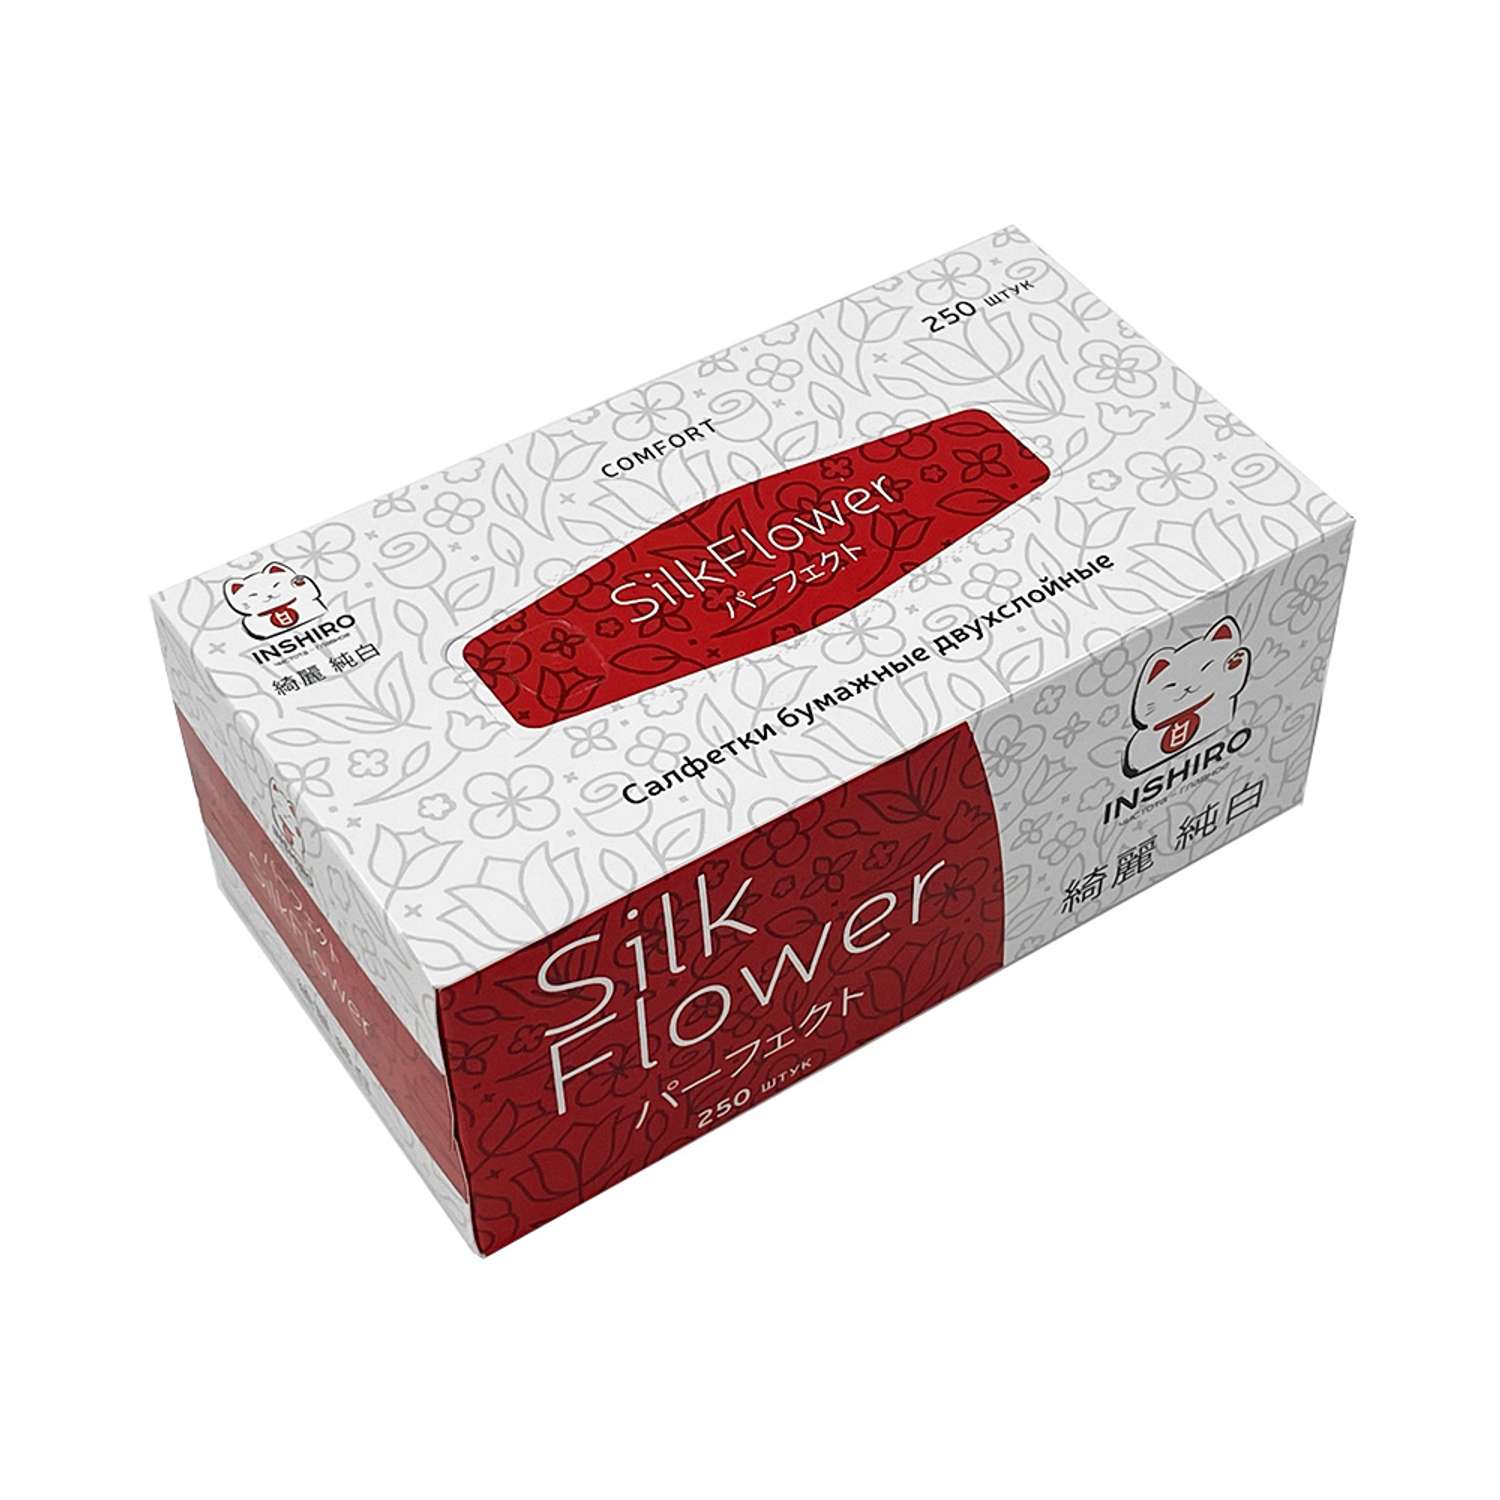 Бумажные салфетки Inshiro в бело-красной коробке SilkFlower 2 слоя 250 шт - фото 1